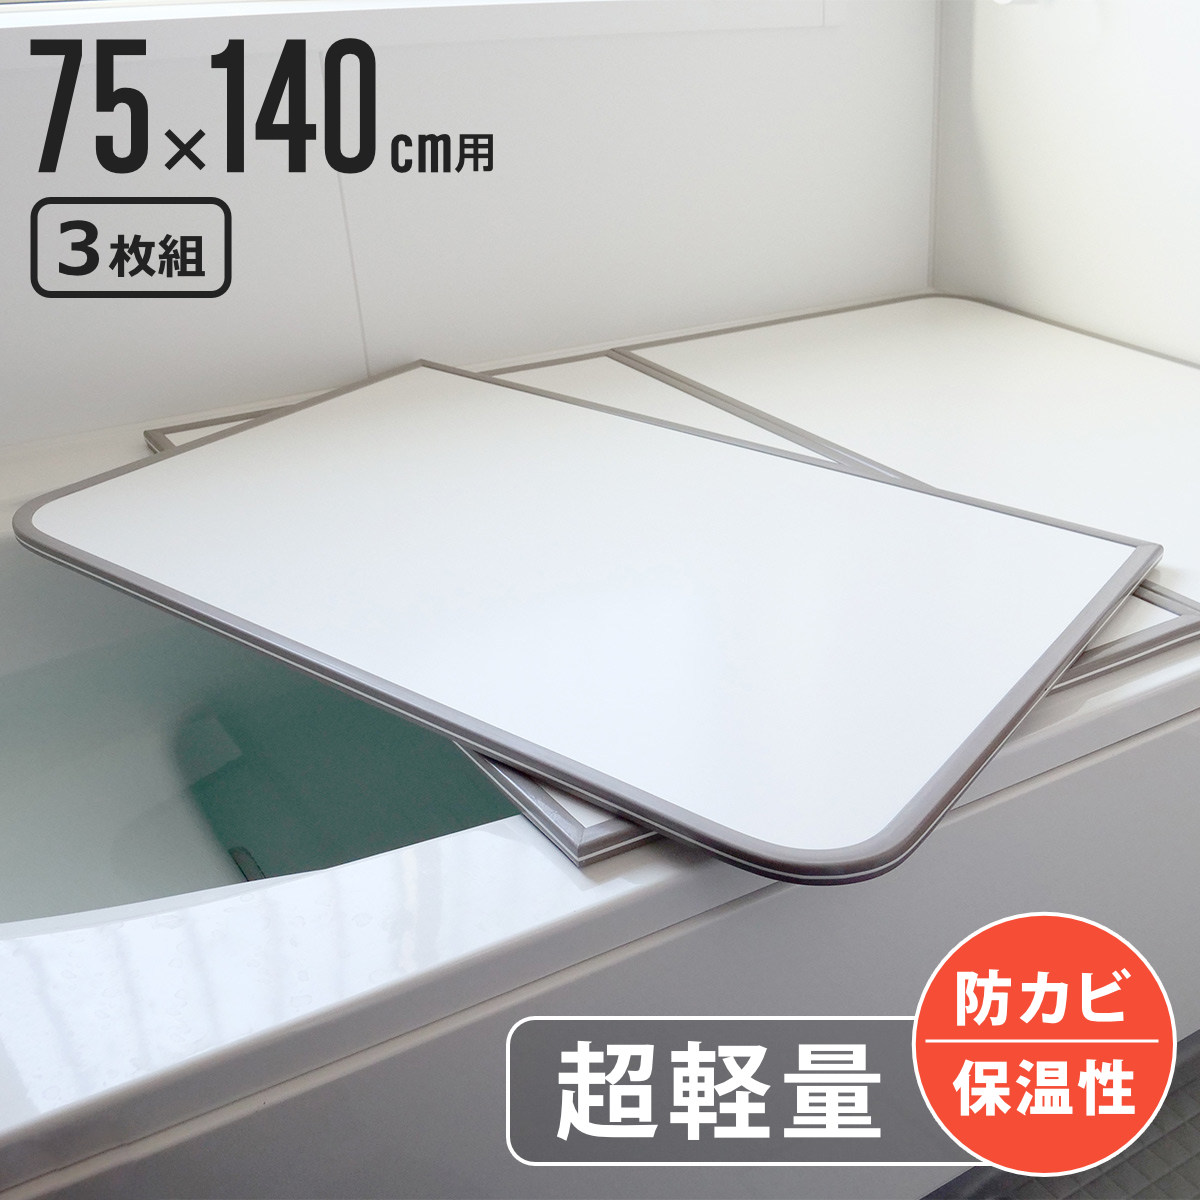  風呂ふた 組み合わせ 軽量 カビの生えにくい風呂ふた L-14 75×140cm 実寸73×138cm 3枚組